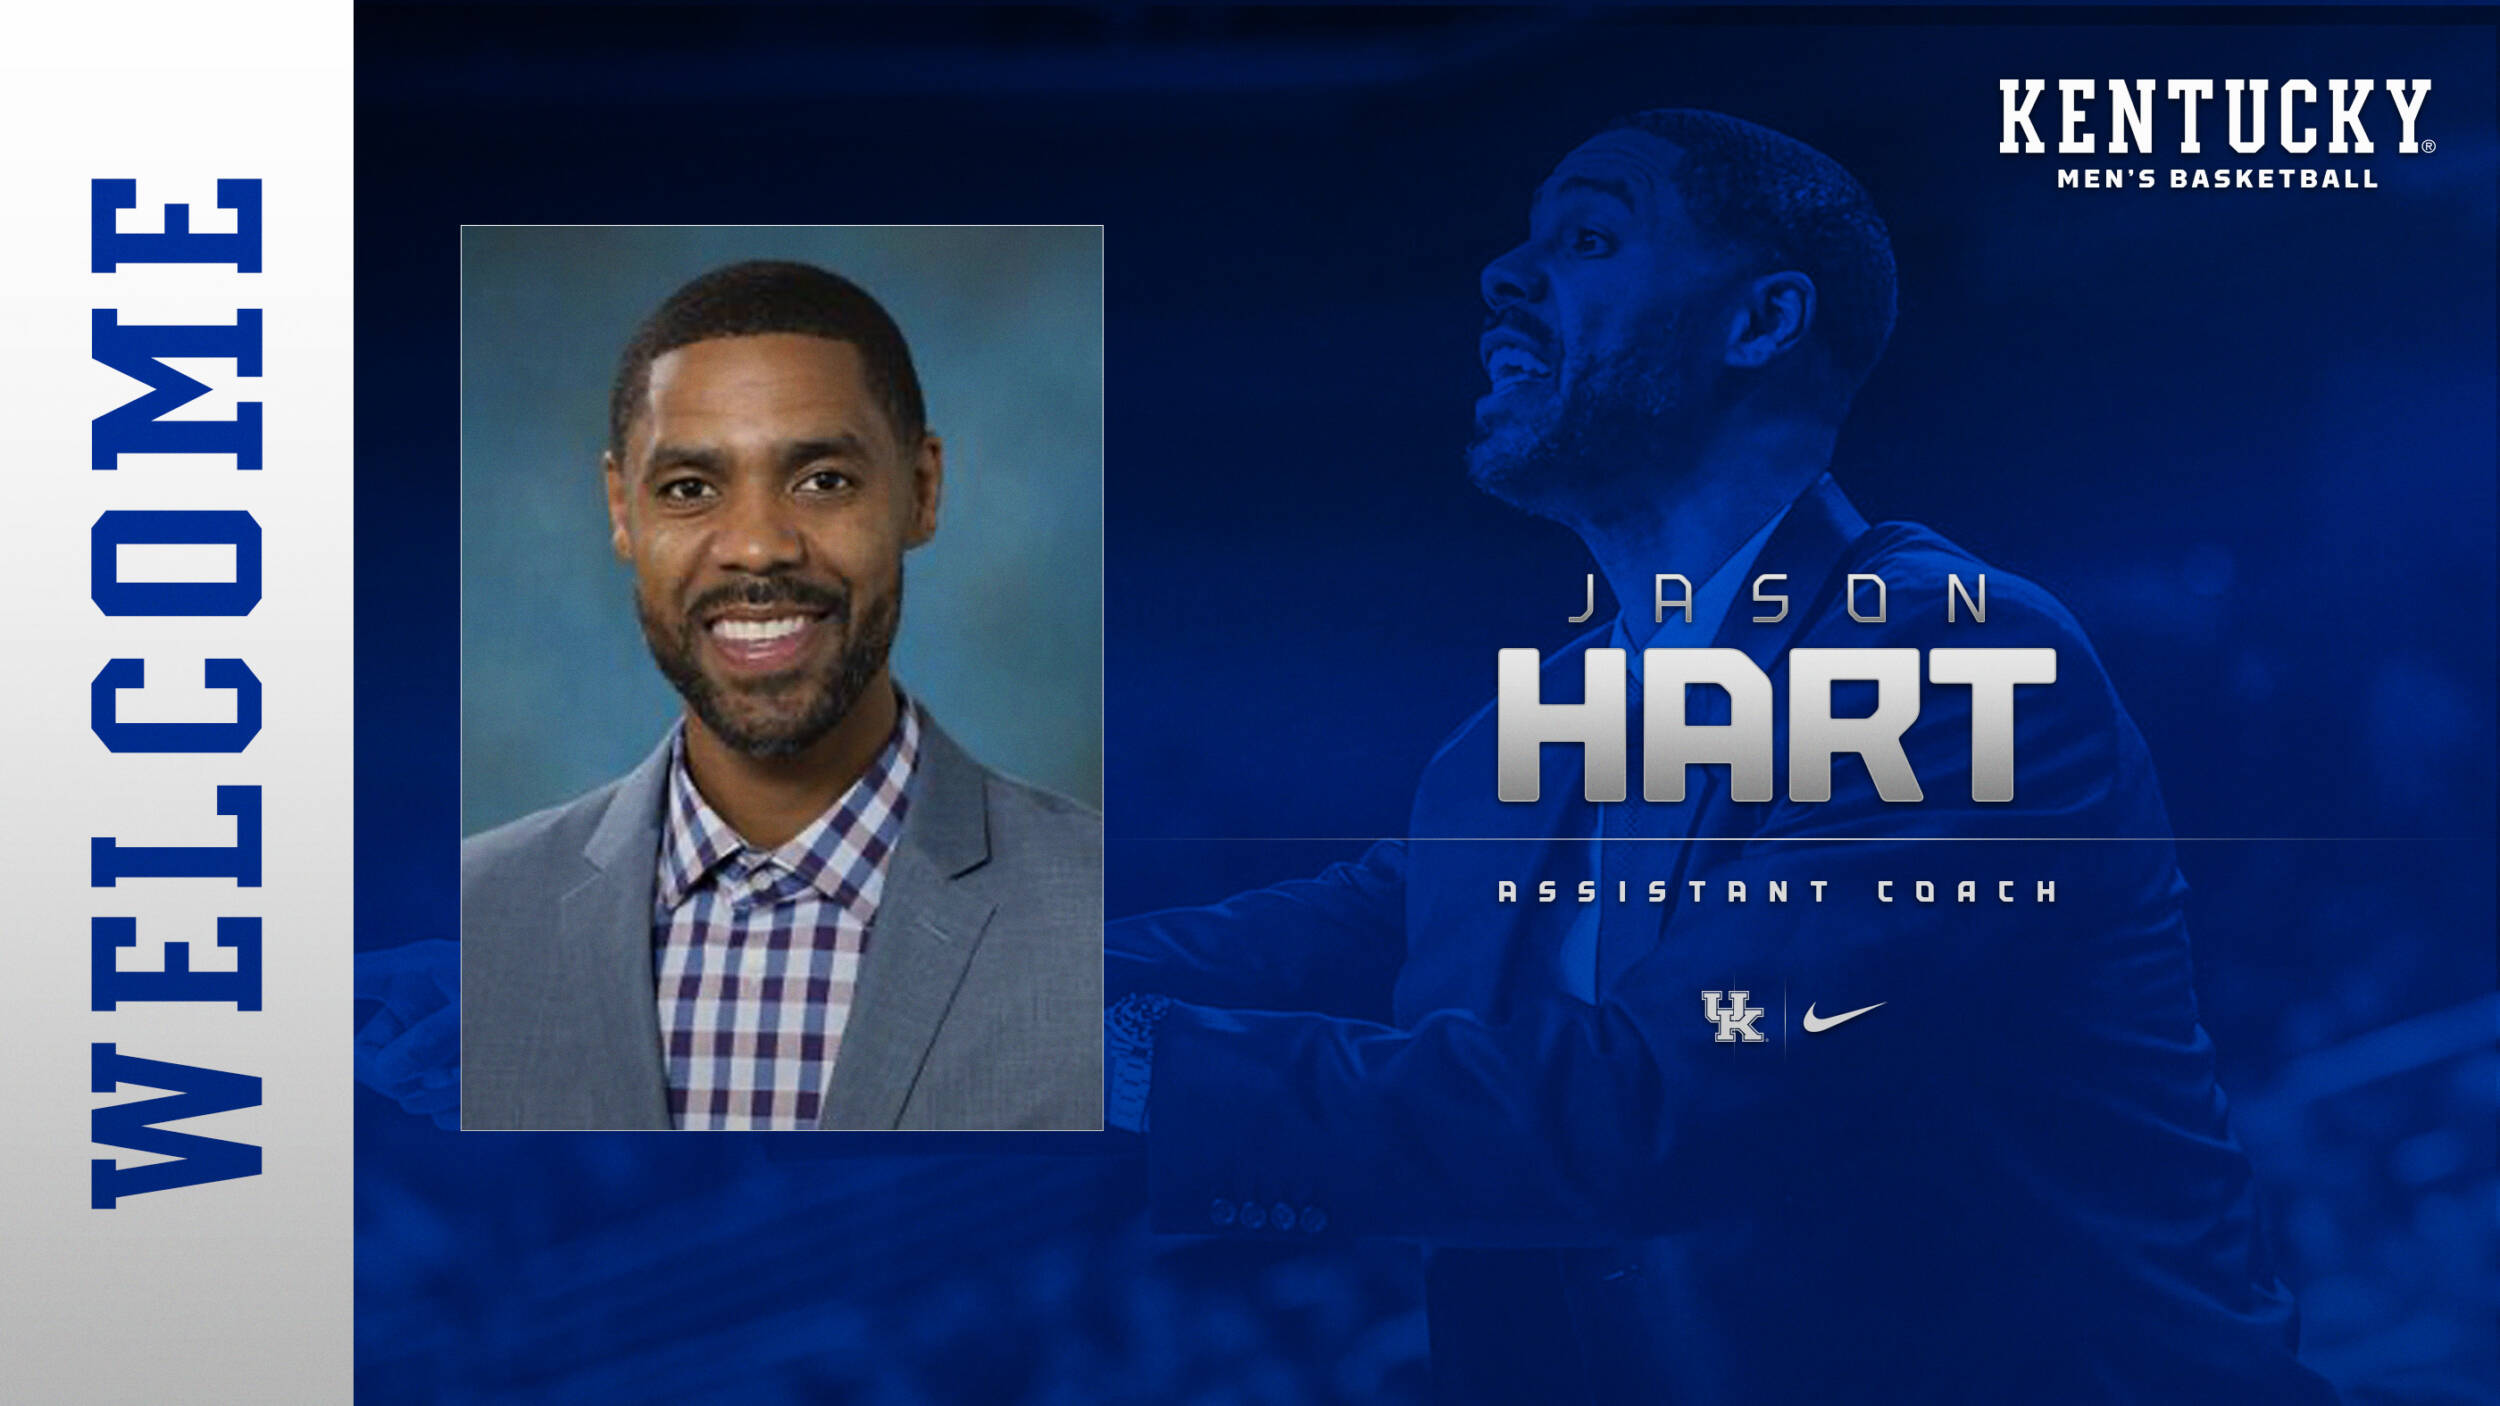 Jason Hart Named Assistant Coach of Kentucky Men’s Basketball